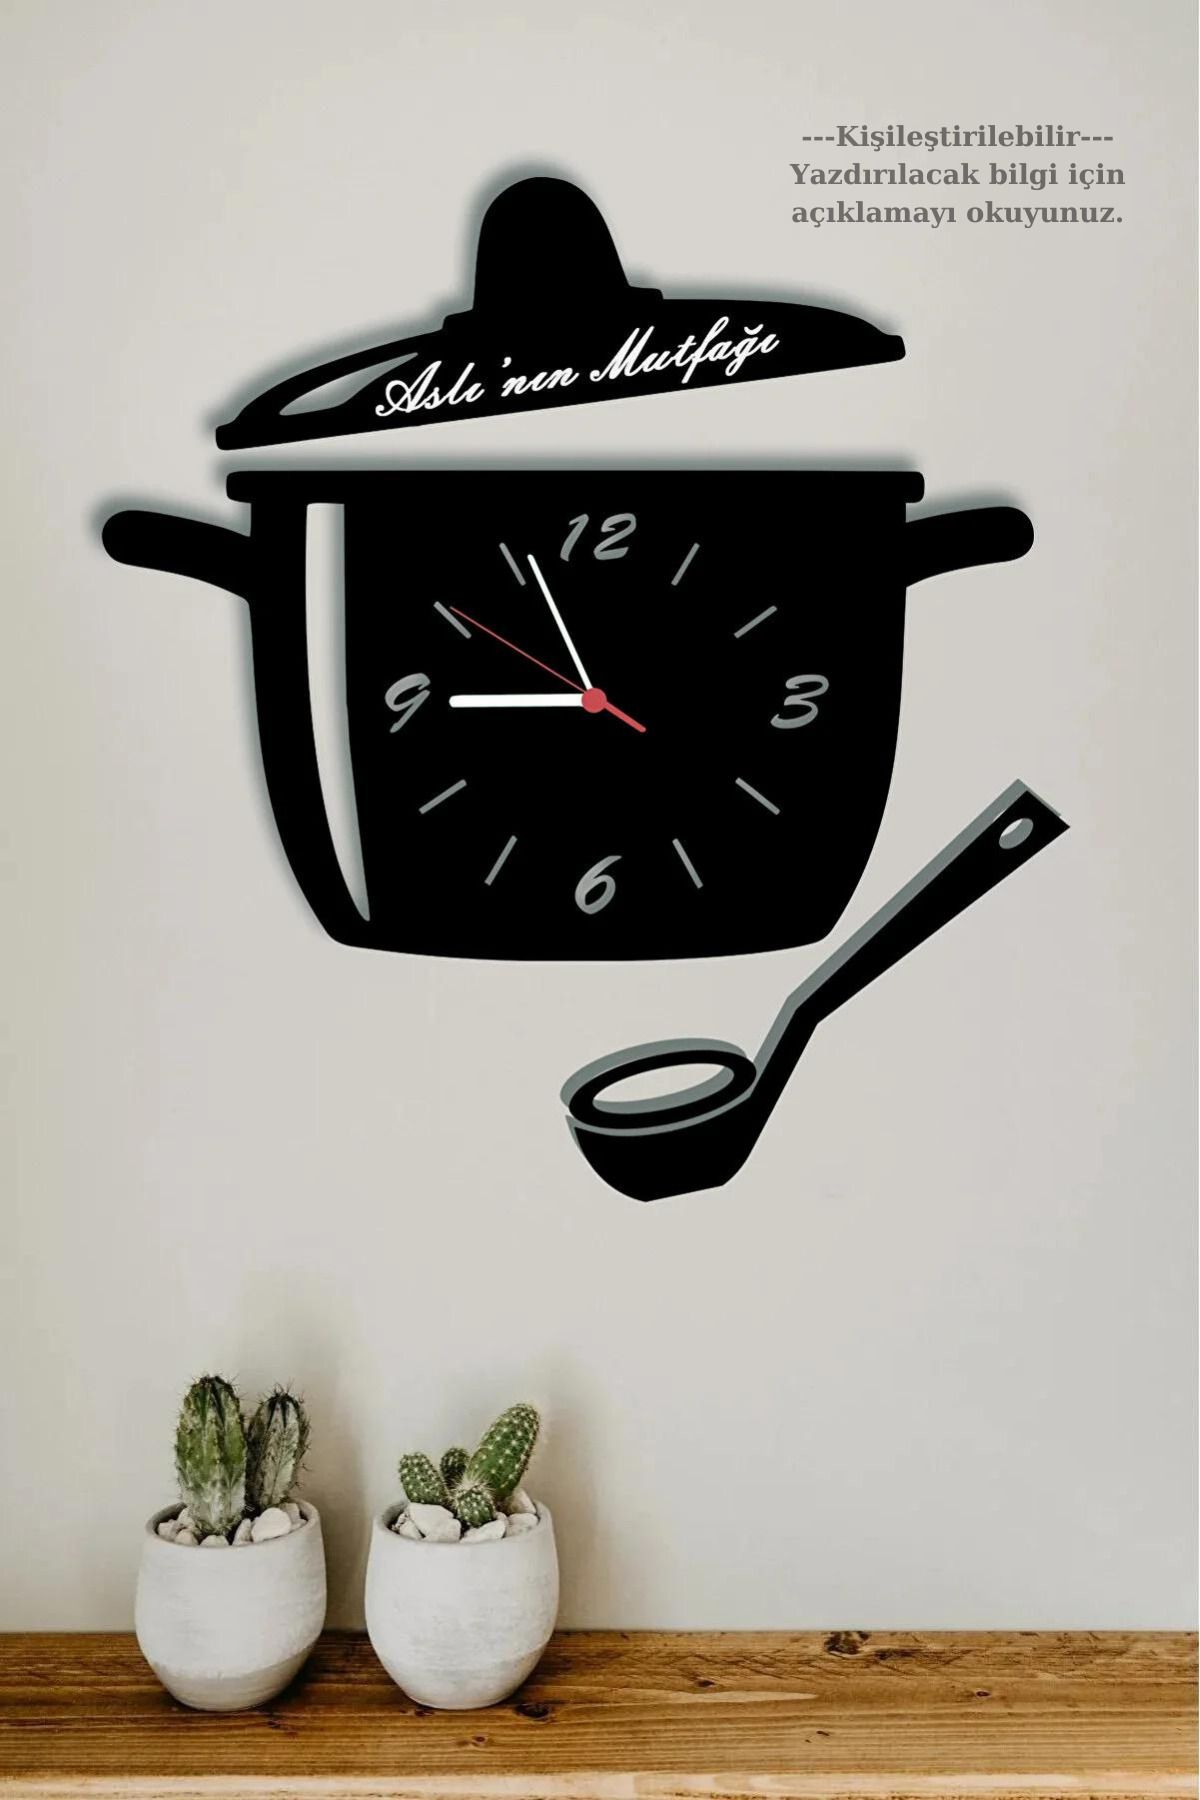 Ensa Design Mutfak Duvar Saati Tencere Kapak Modelli - İsim Yazılabilir - Mutfak Saati